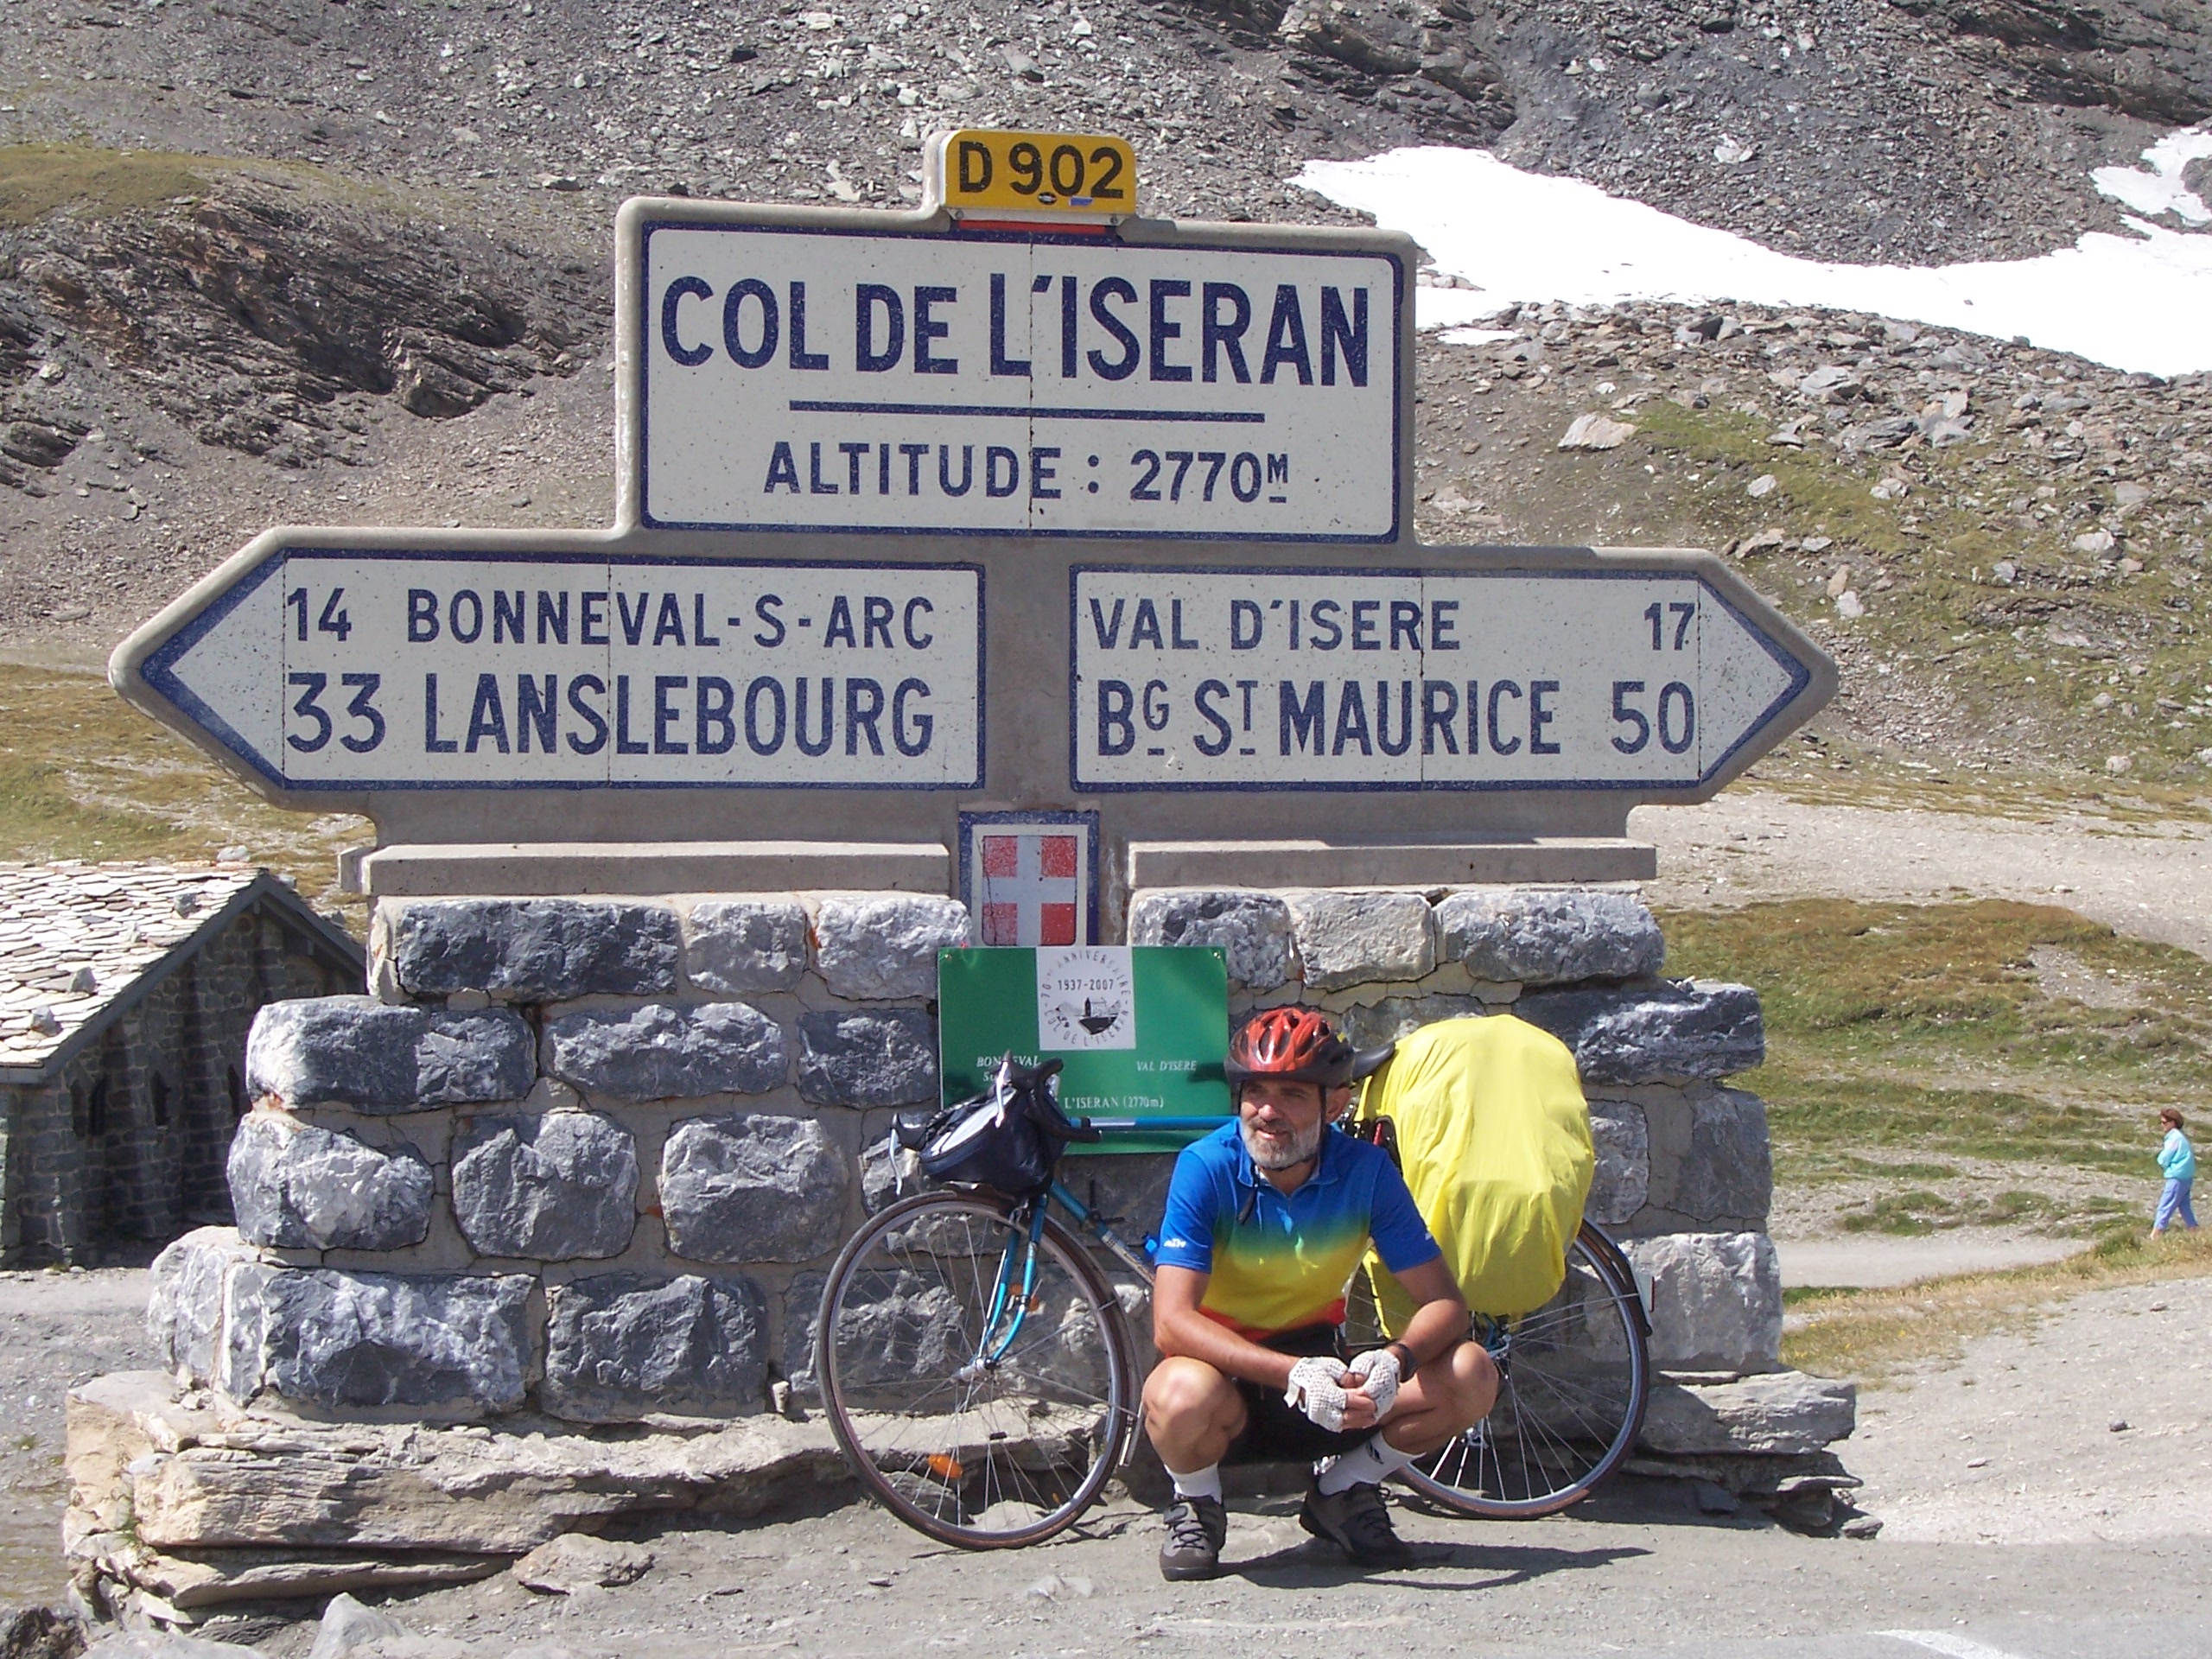 Col del Izeran 2770, hledám partnera pro cyklistické výlety